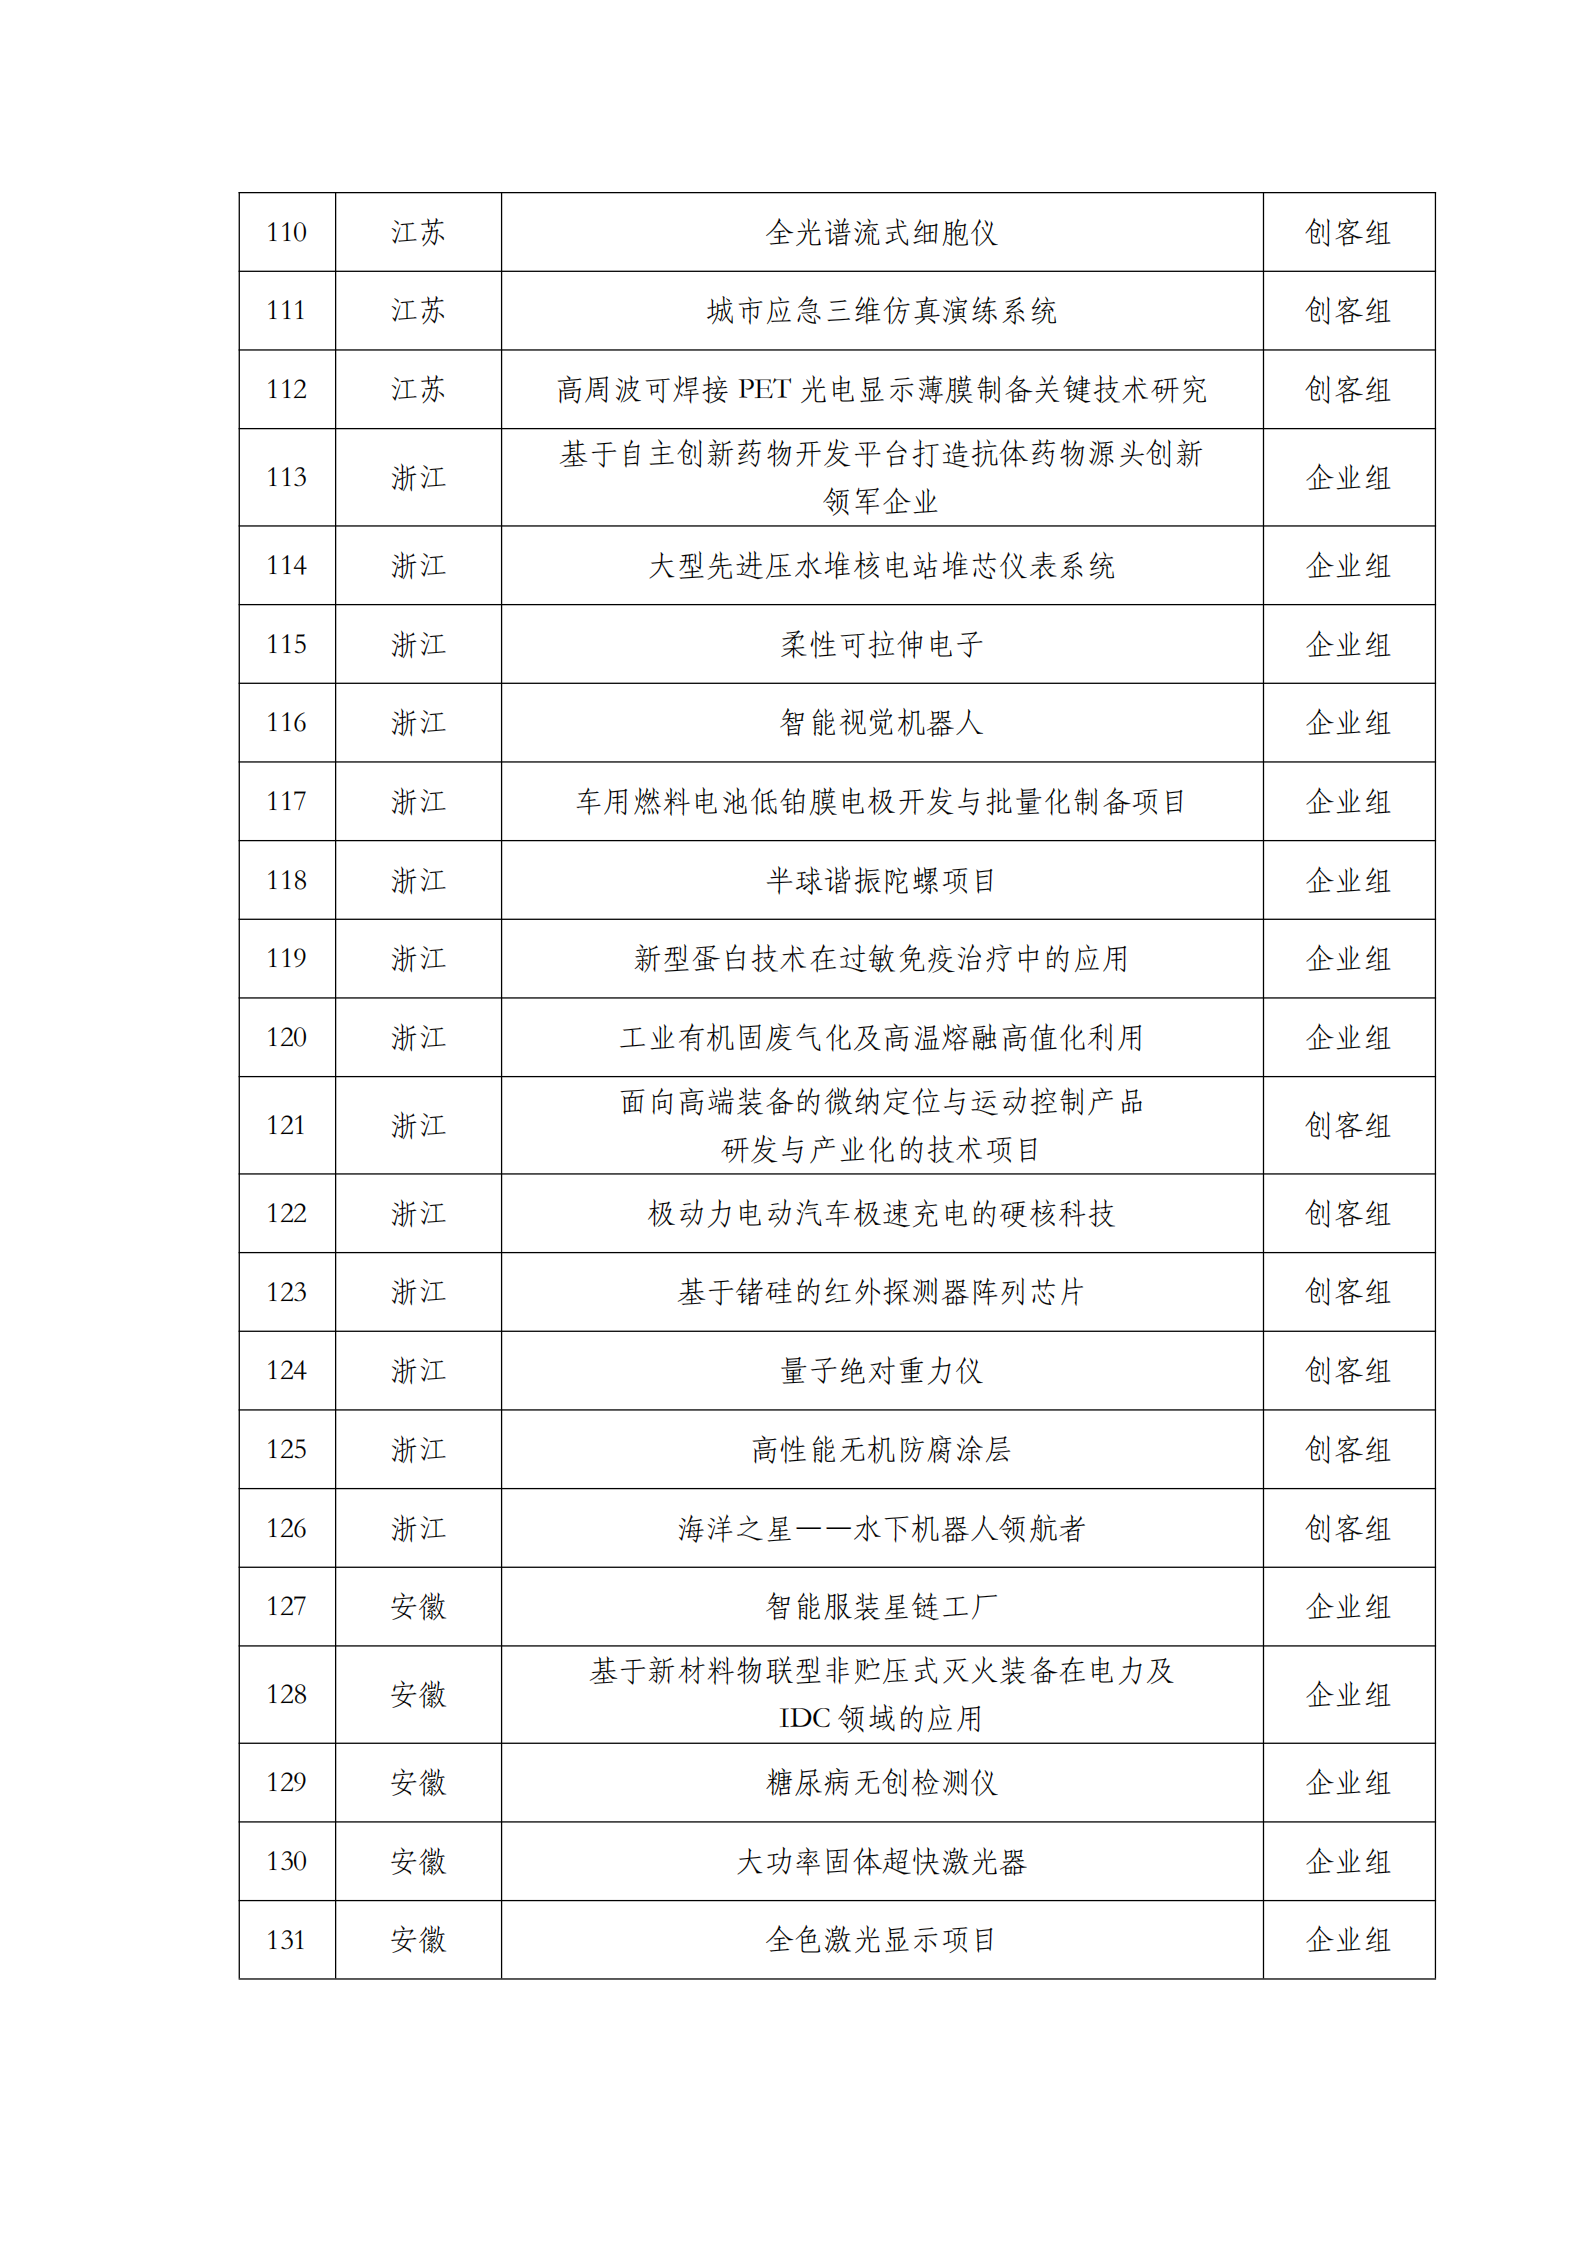 第六届“创客中国”中小企业创新创业大赛500强公示名单_05.png